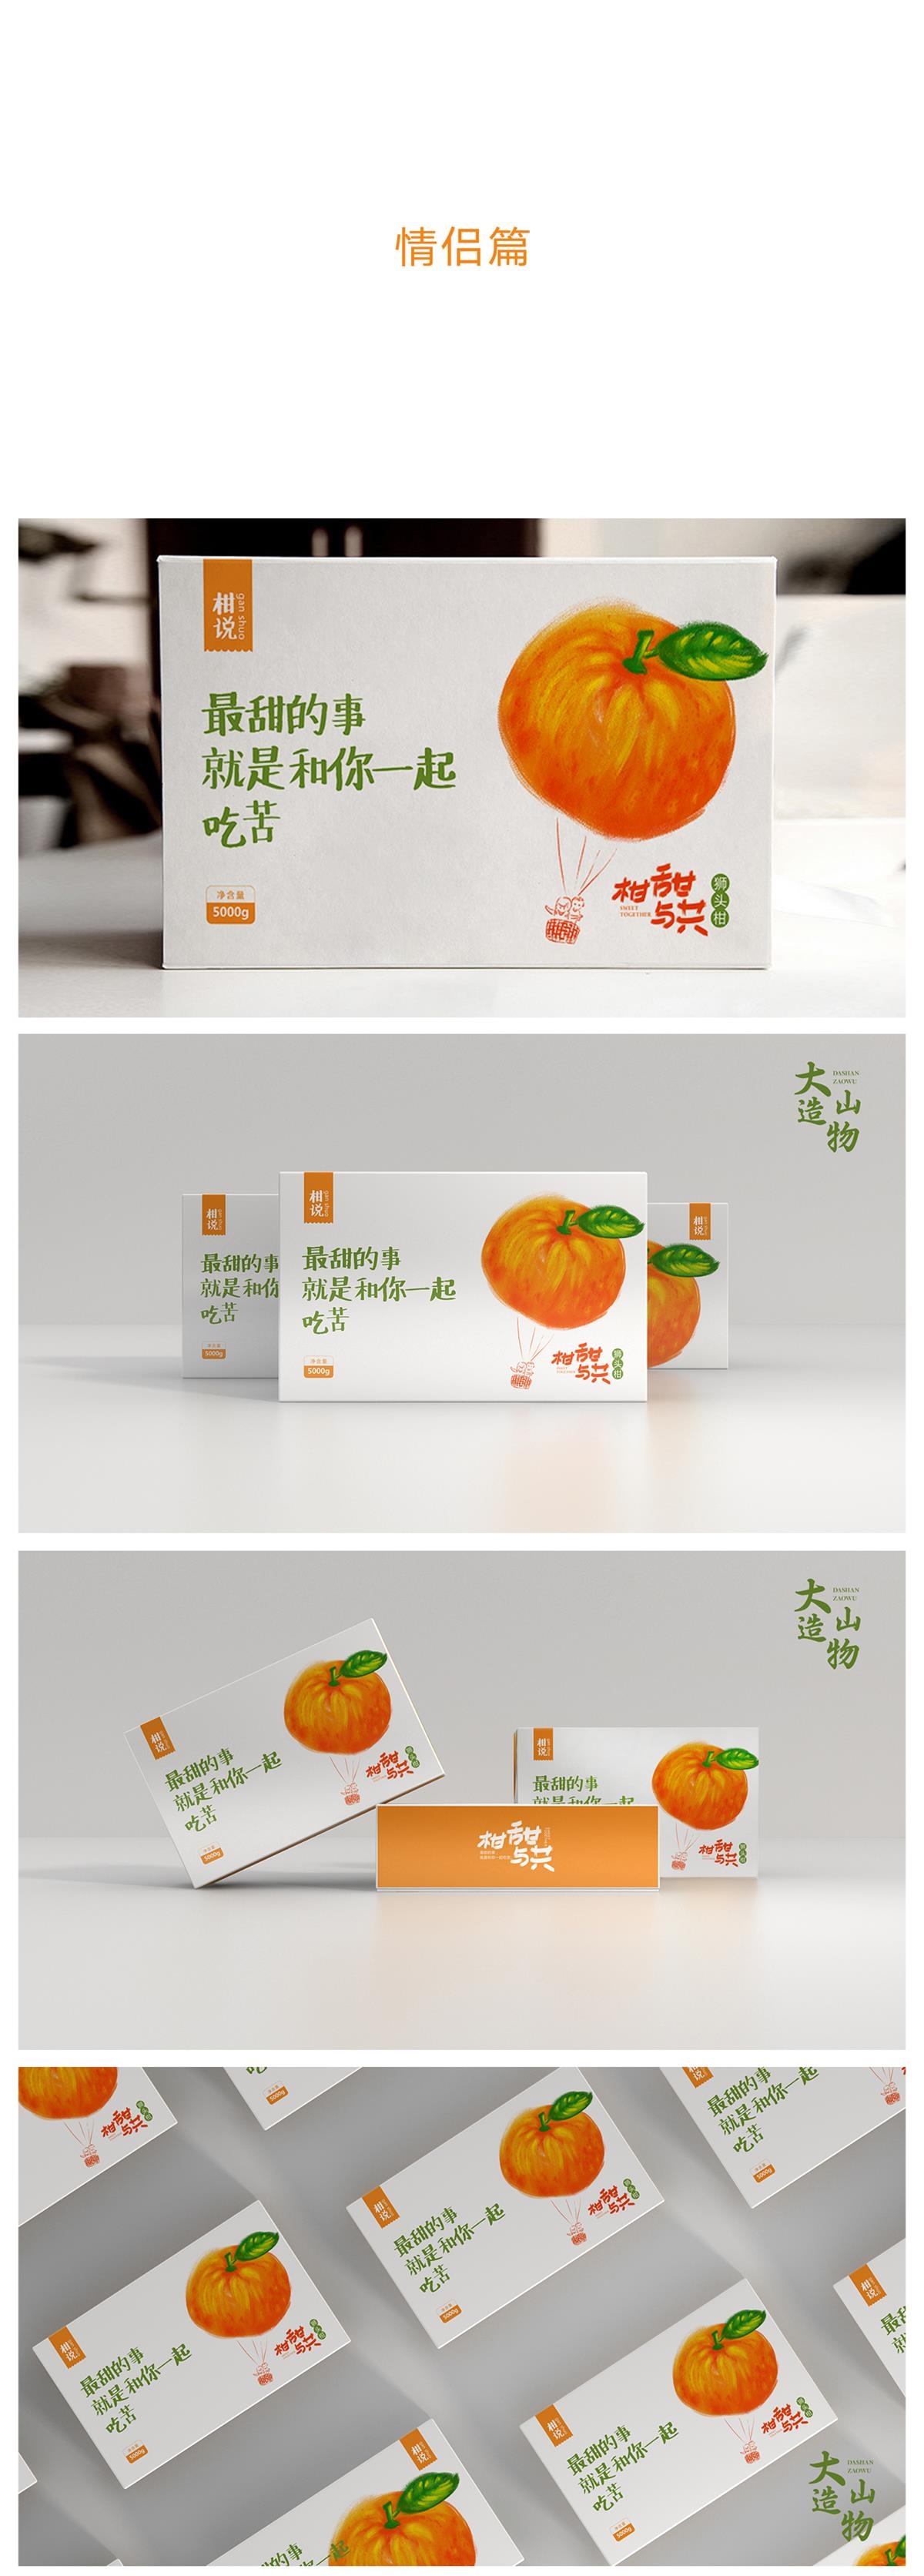 狮头柑-农产品特产 包装设计 X 张晓宁